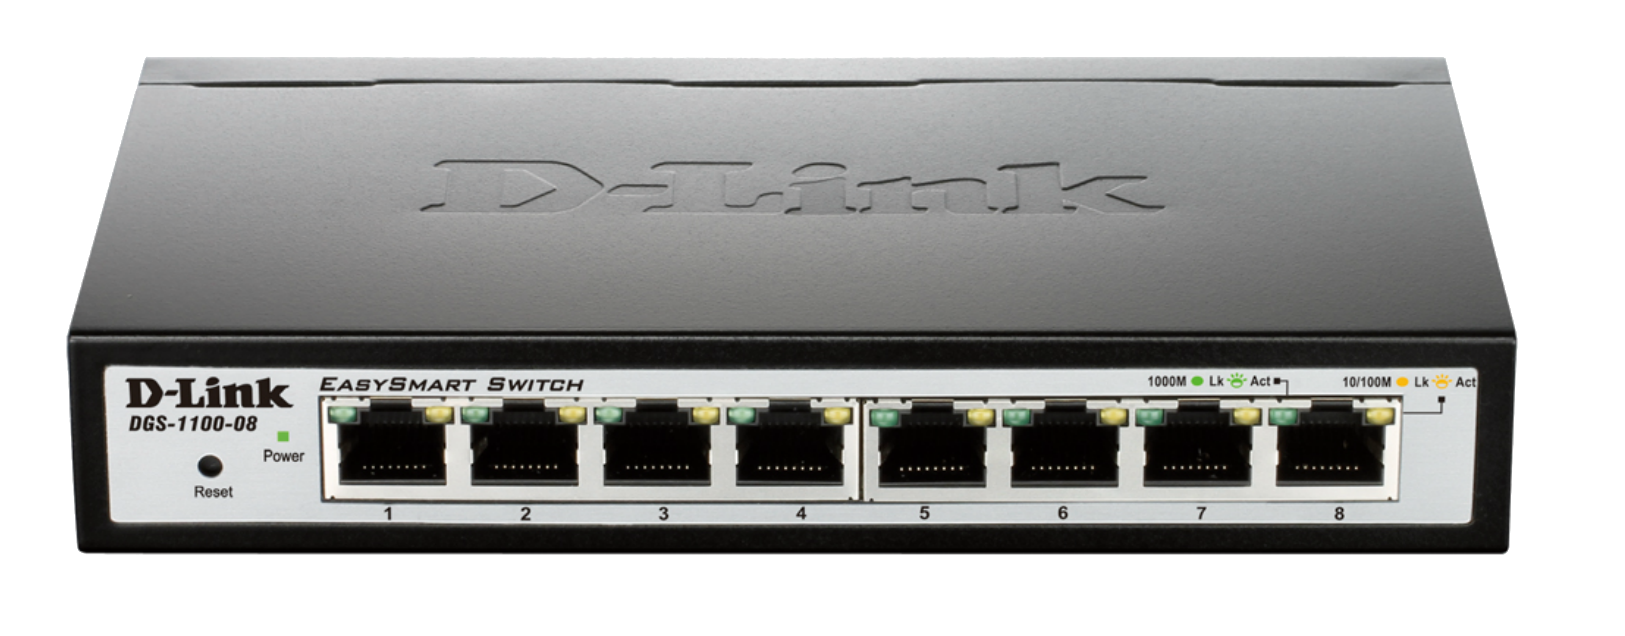 Суич D-Link DGS-1100-08, 8 портов 10/100/1000 Gigabit Smart Switch, управляем,